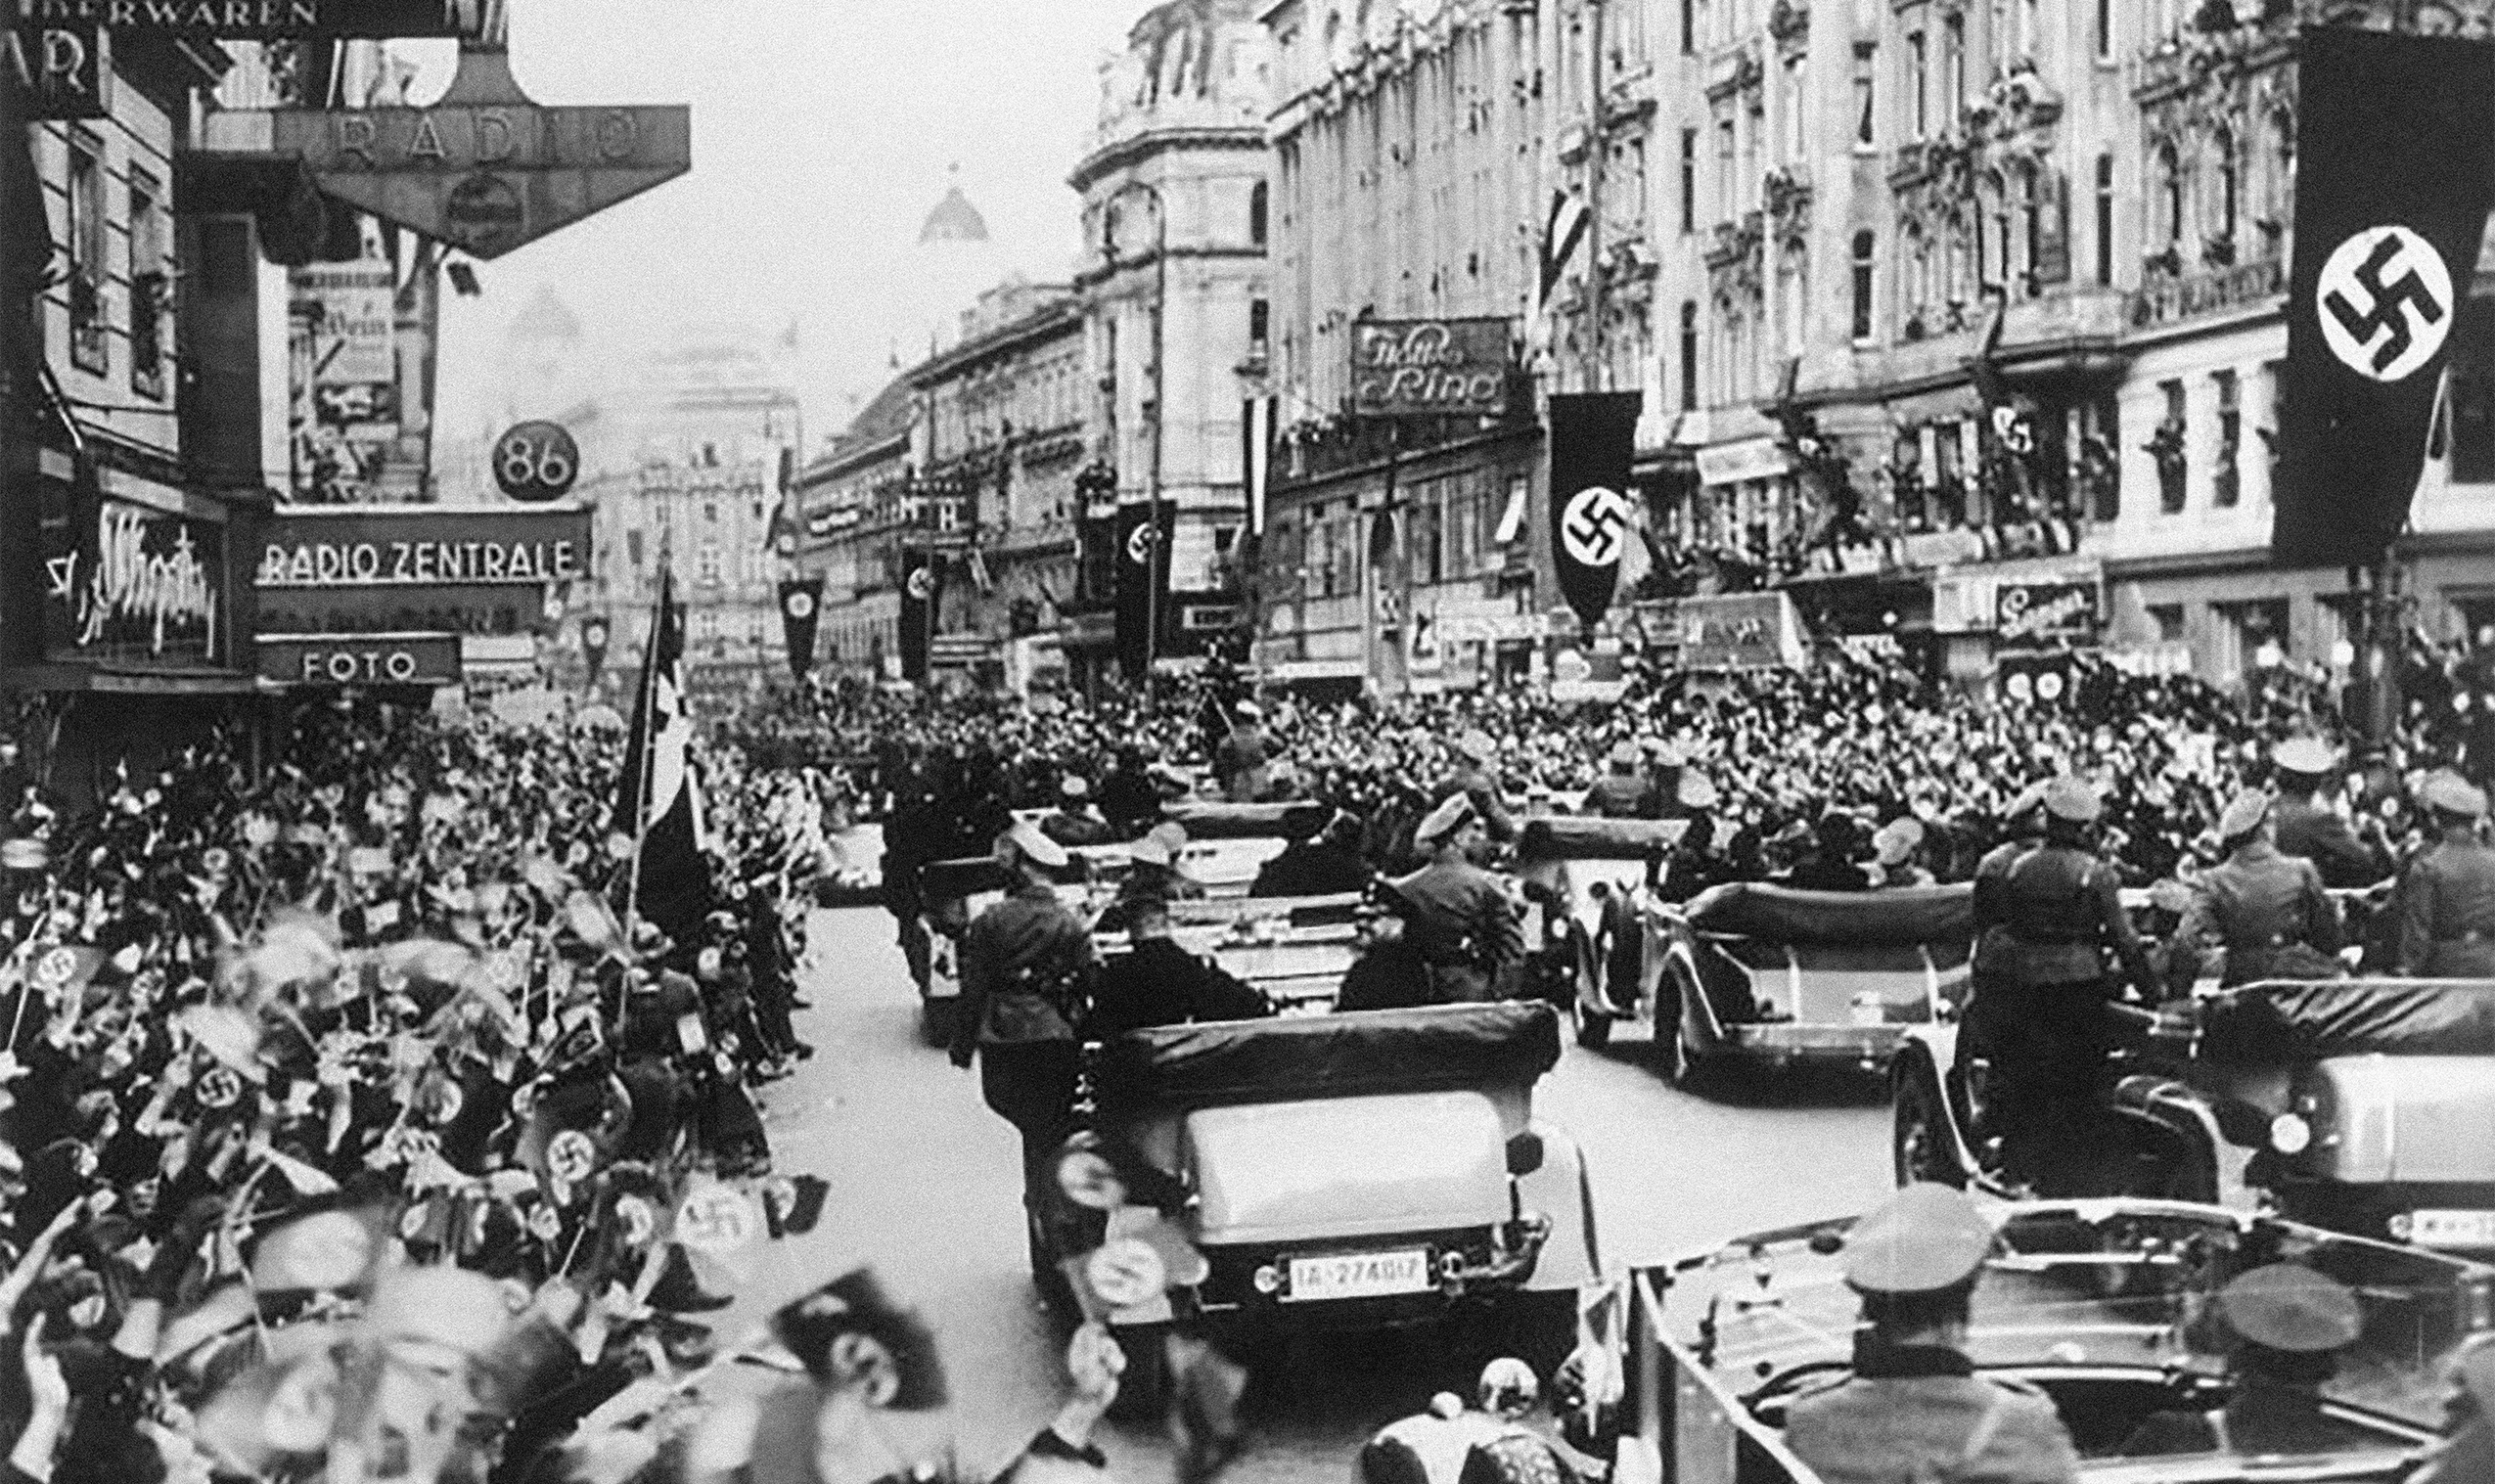 Para Hitler, Áustria queria impedir uma política amigável com a Alemanha; após unificação, foi decretada anistia aos prisioneiros nazistas na Áustria